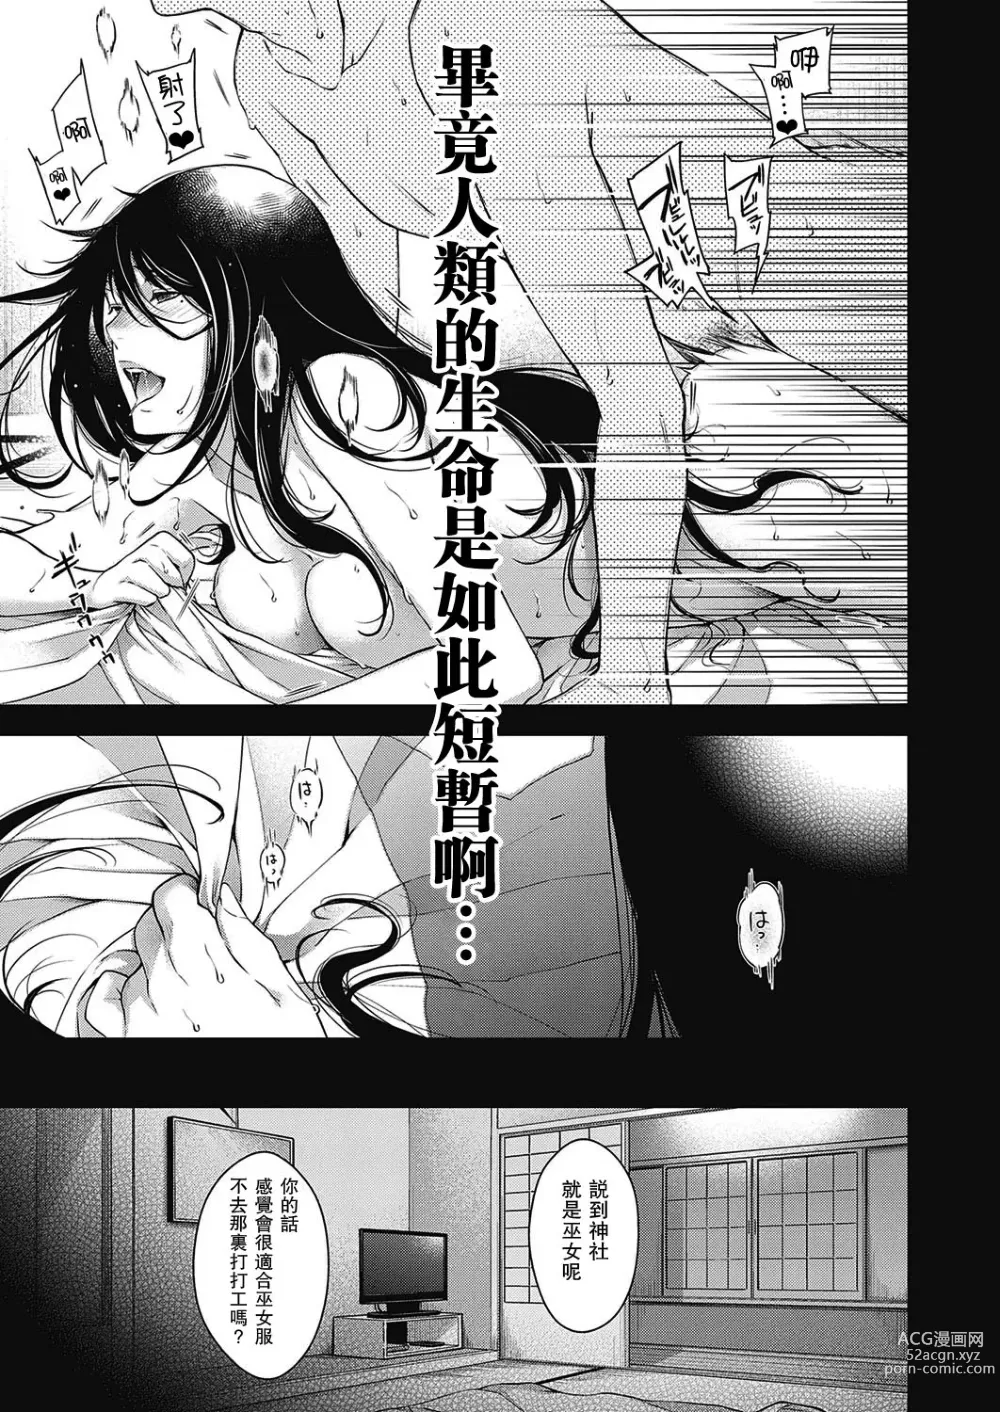 Page 9 of manga Onmyou no Kemono